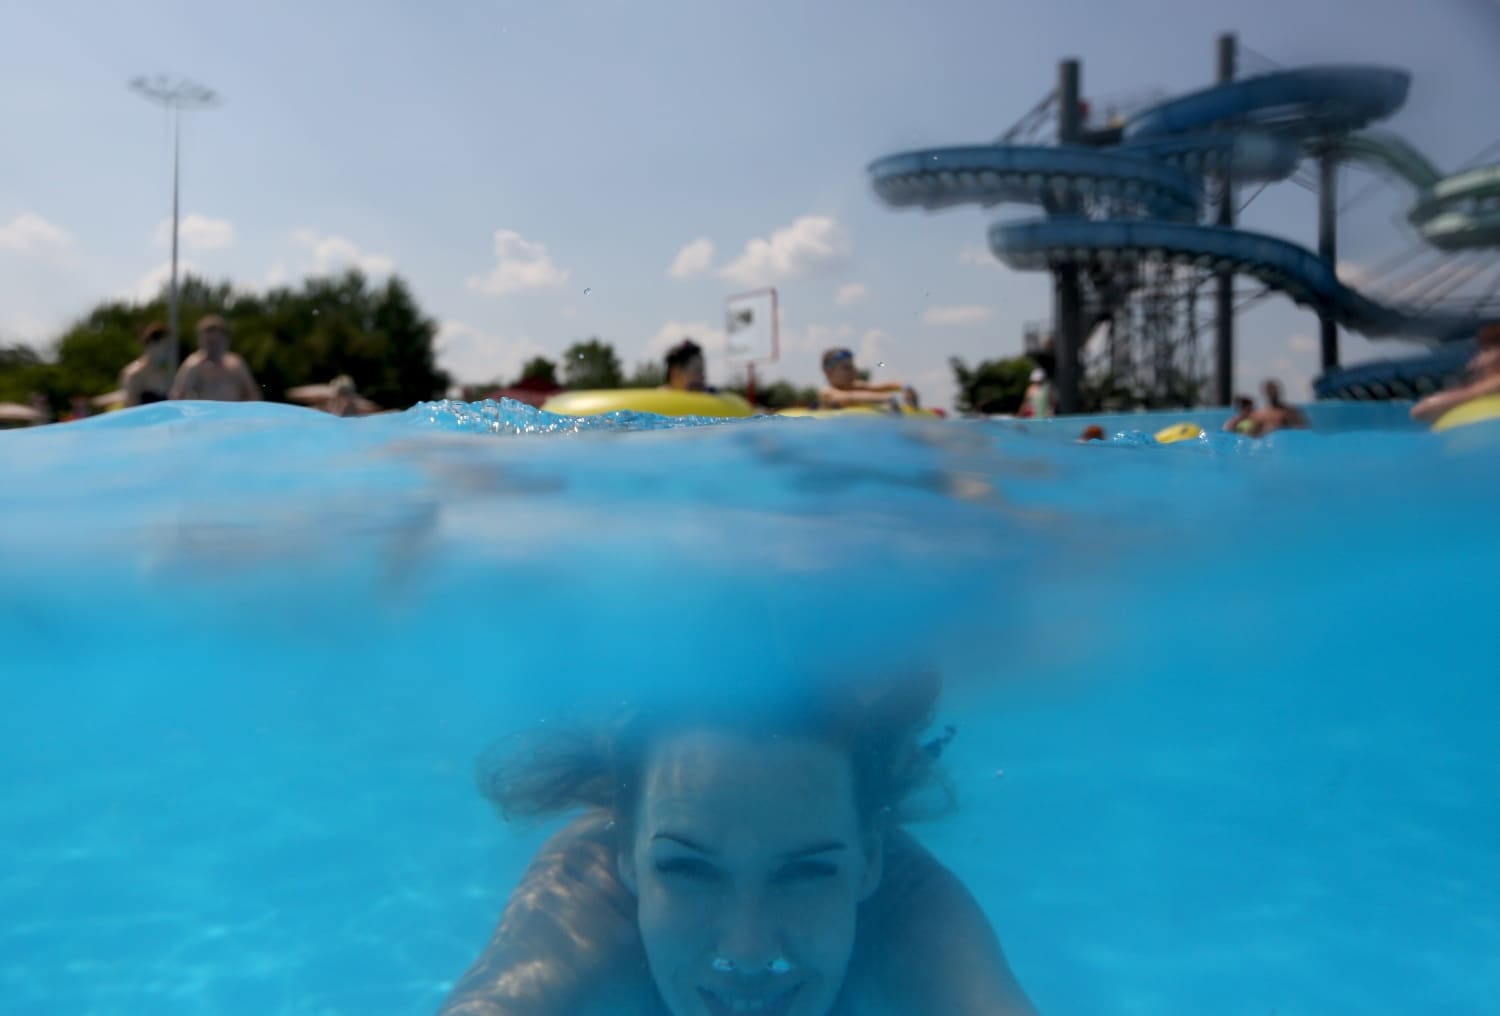 Cientos de personas disfrutan del parque acuático al aire libre "Dreamland", en Minsk (Bielorrusia). Aquapark "Dreamland" es considerado uno de los parques acuáticos al aire libre más grandes de Europa y cubre nueve hectáreas. Los medios locales informan que Minsk está experimentando temperaturas de verano de hasta 33 grados centígrados. 